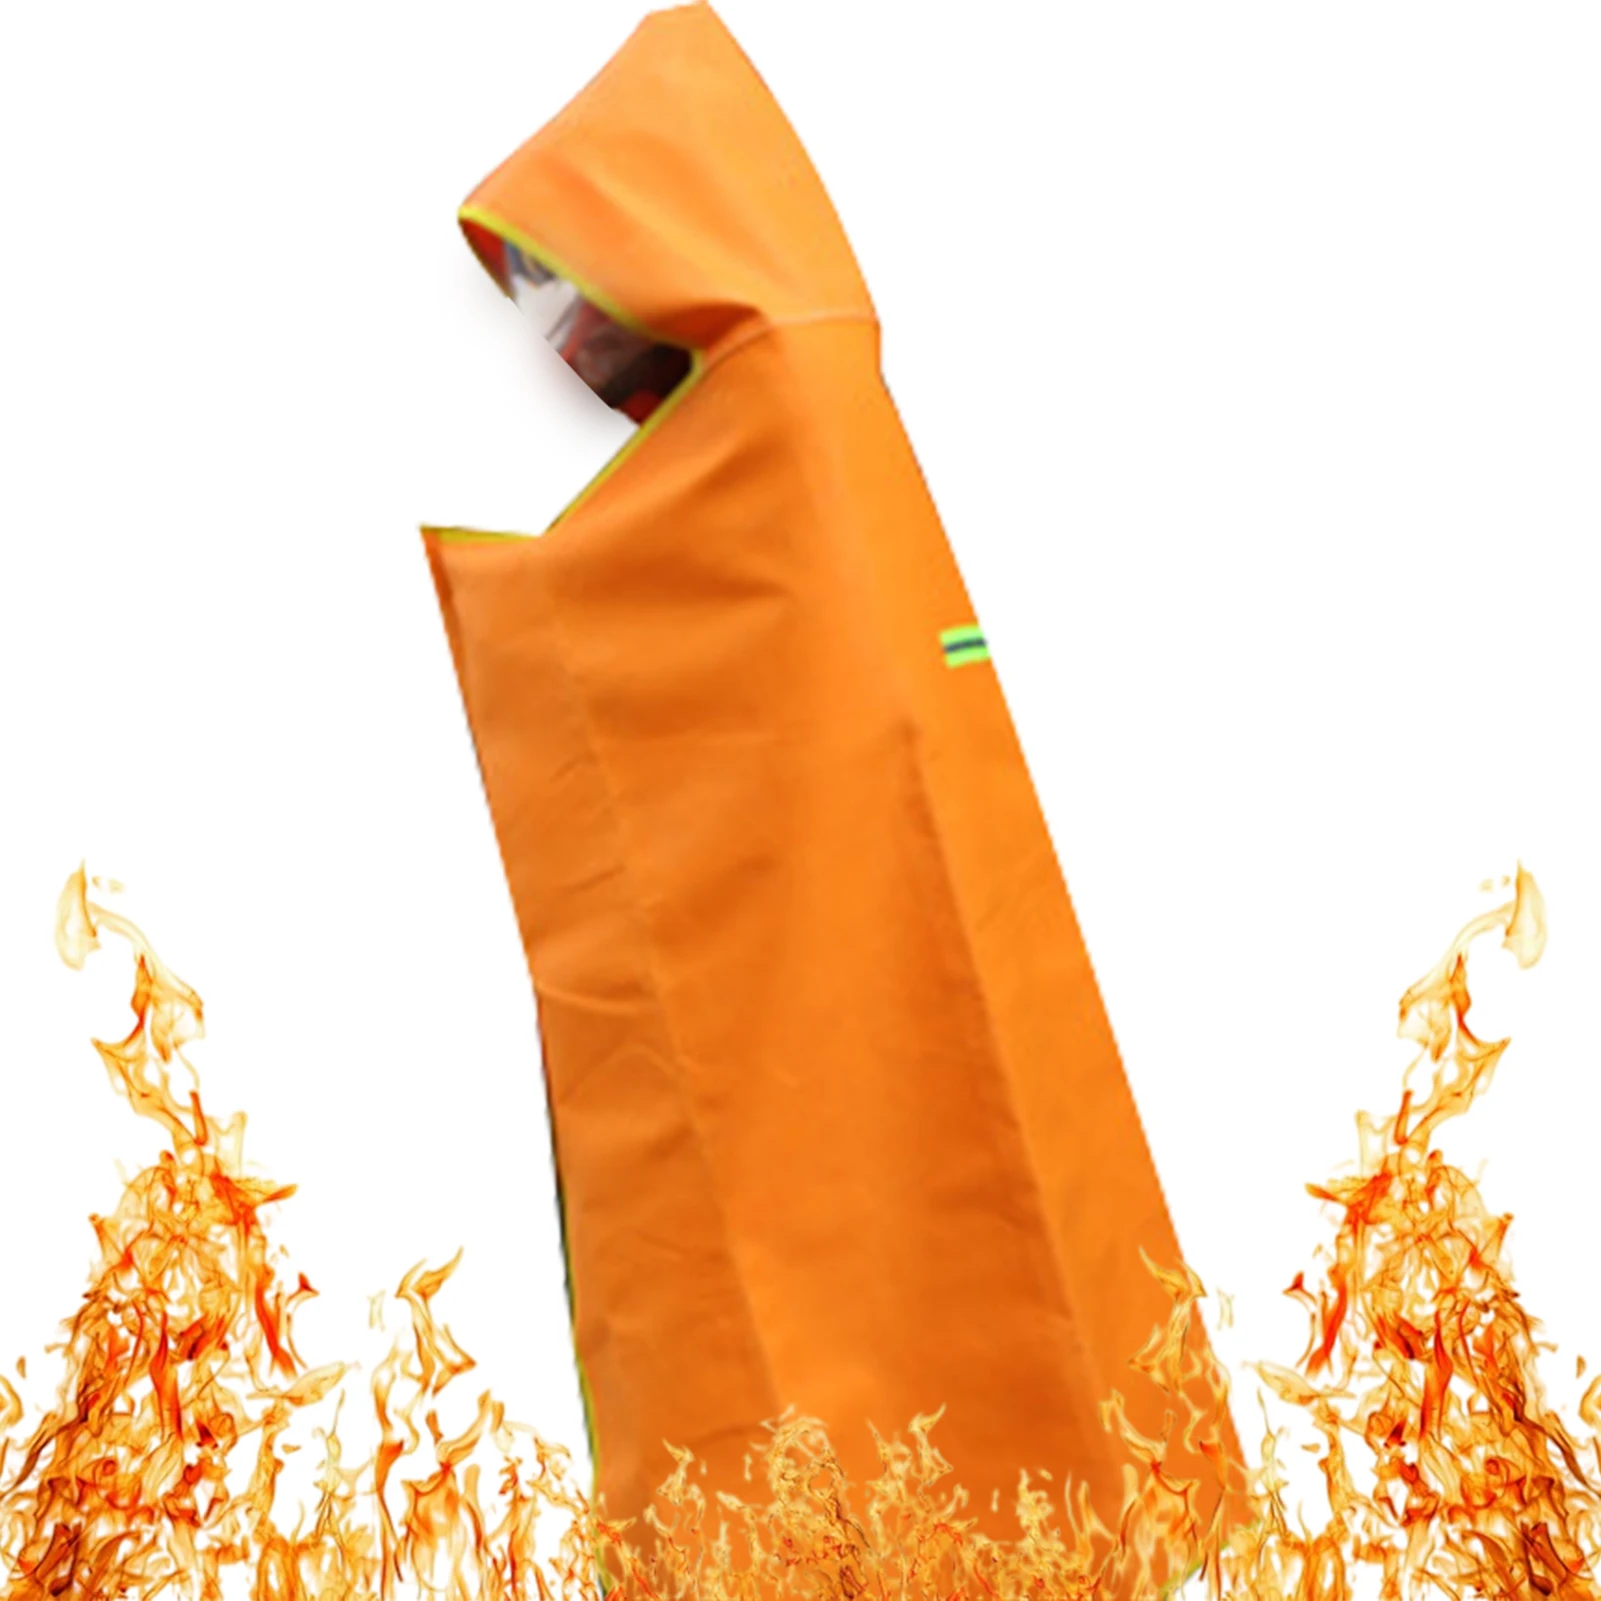 Огнезащитная накидка. Огнезащитная накидка шанс. Накидка огнестойкая спектр. Противопожарное одеяло. Накидка противопожарная огнестойкая.